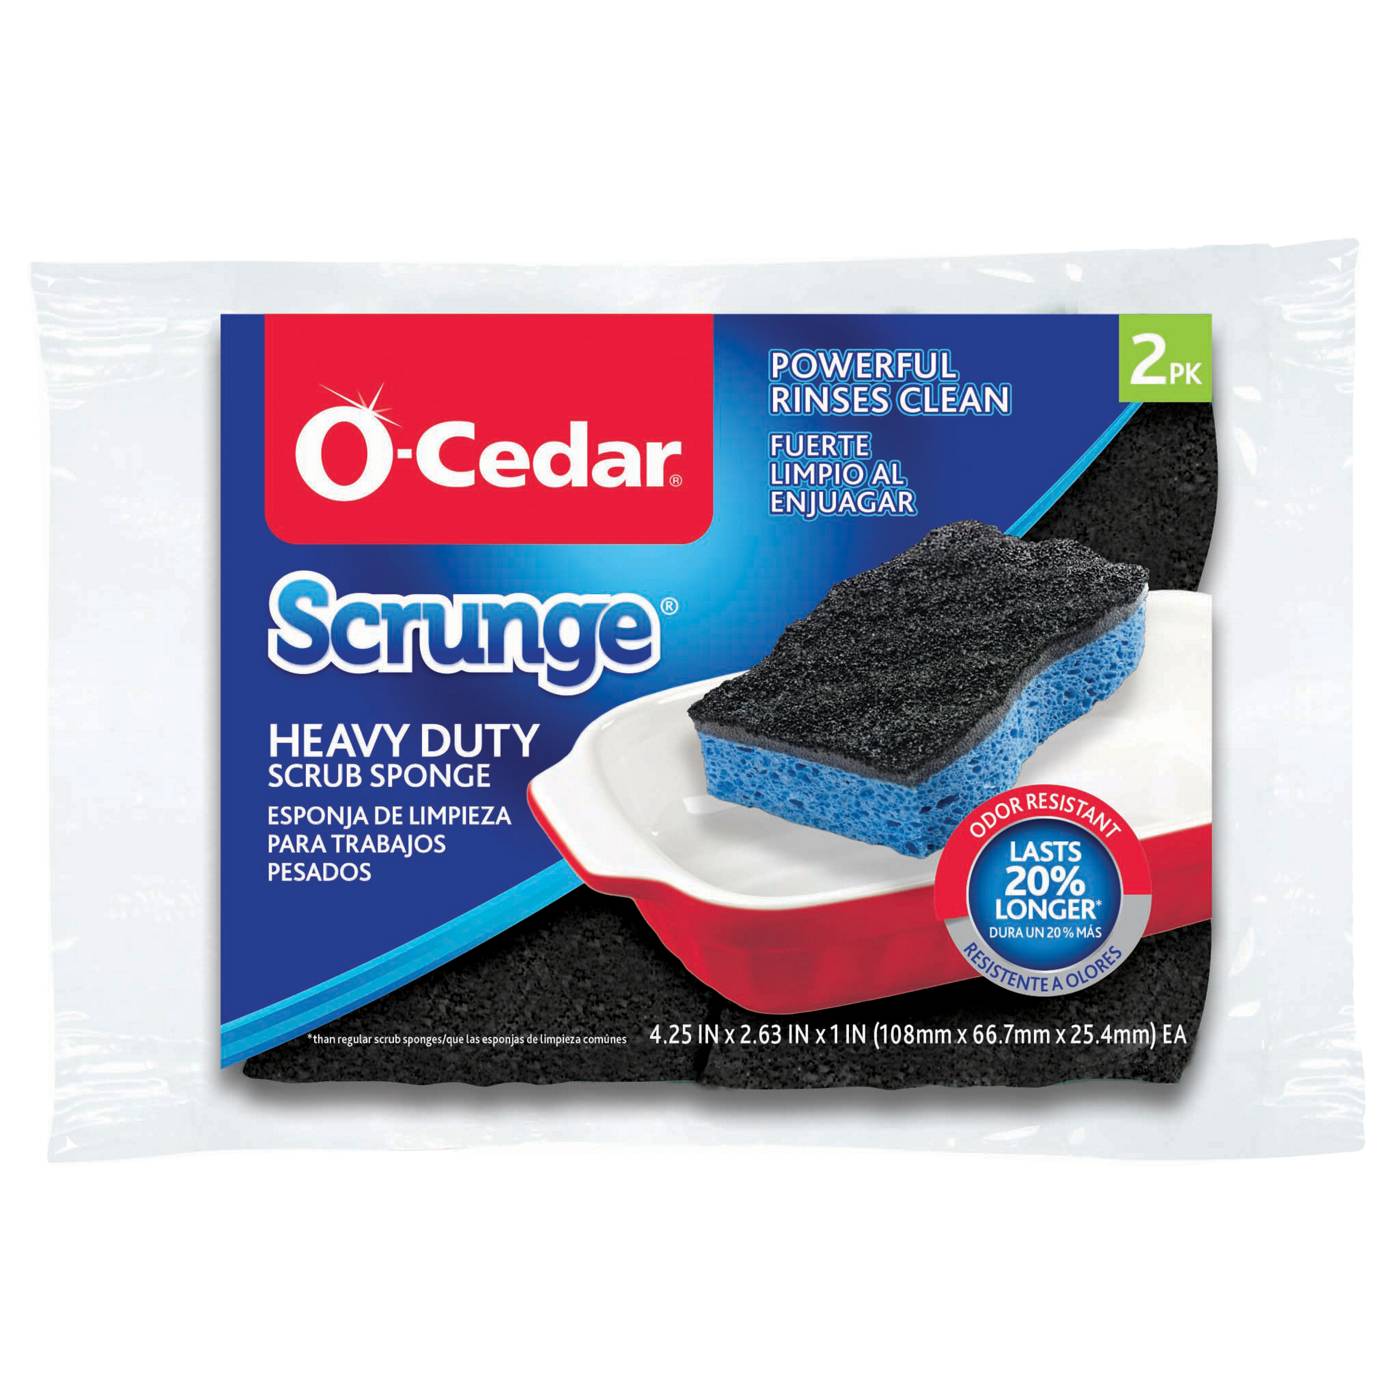 O-Cedar Scrunge Heavy Duty Sponge; image 1 of 6